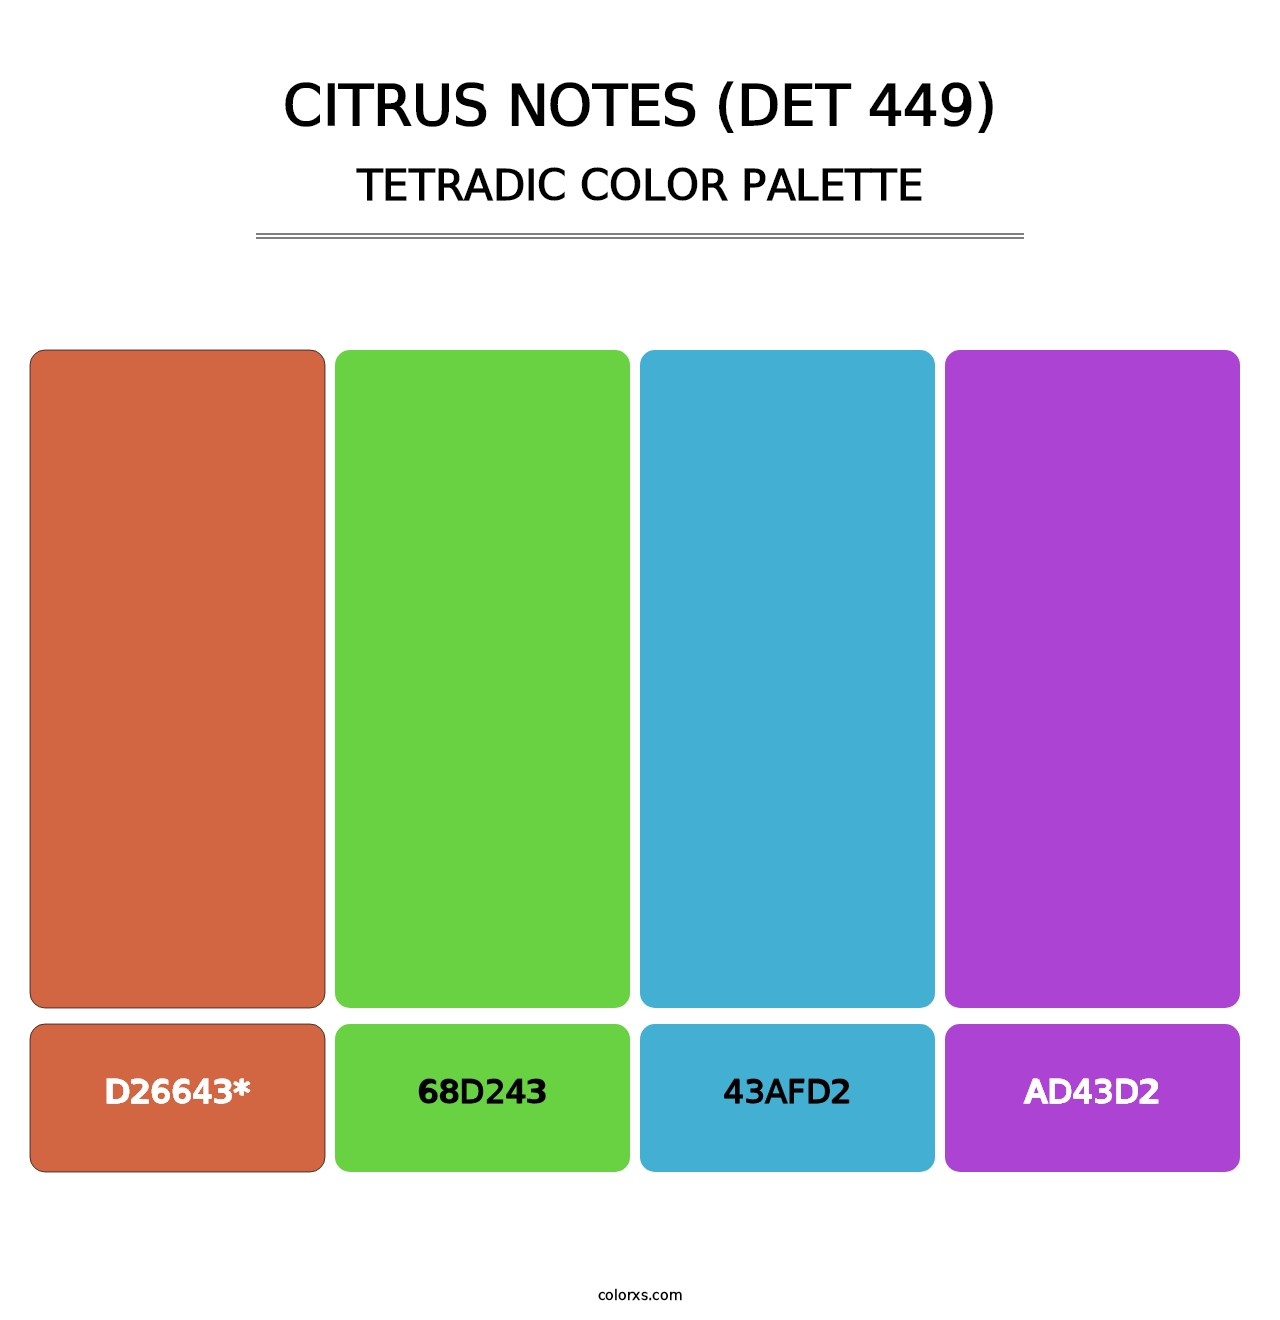 Citrus Notes (DET 449) - Tetradic Color Palette